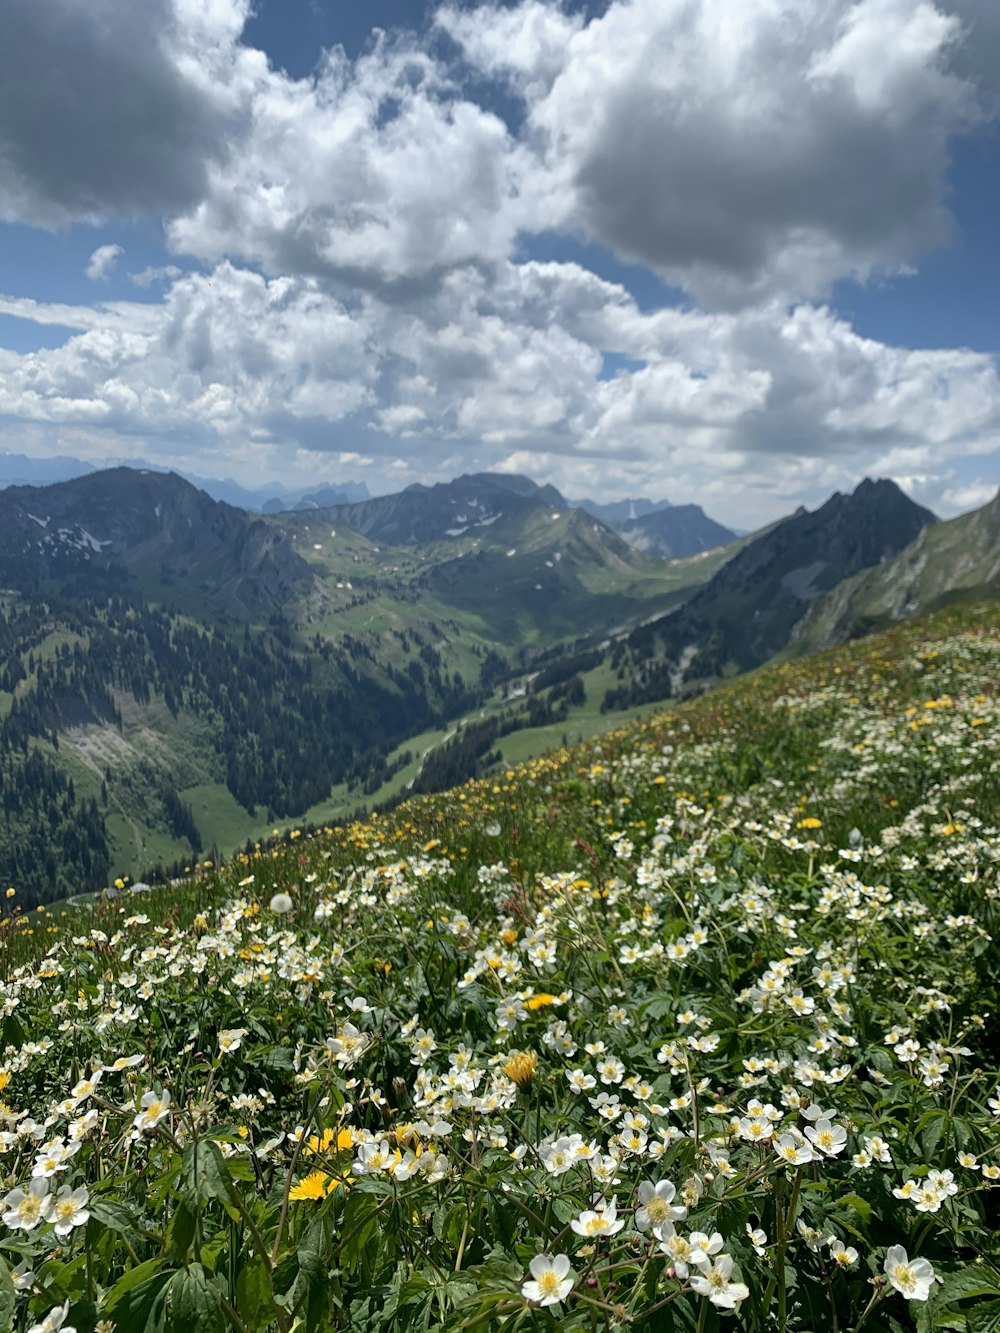 fiori bianchi e gialli sul campo di erba verde vicino alle montagne sotto le nuvole bianche ed il cielo blu